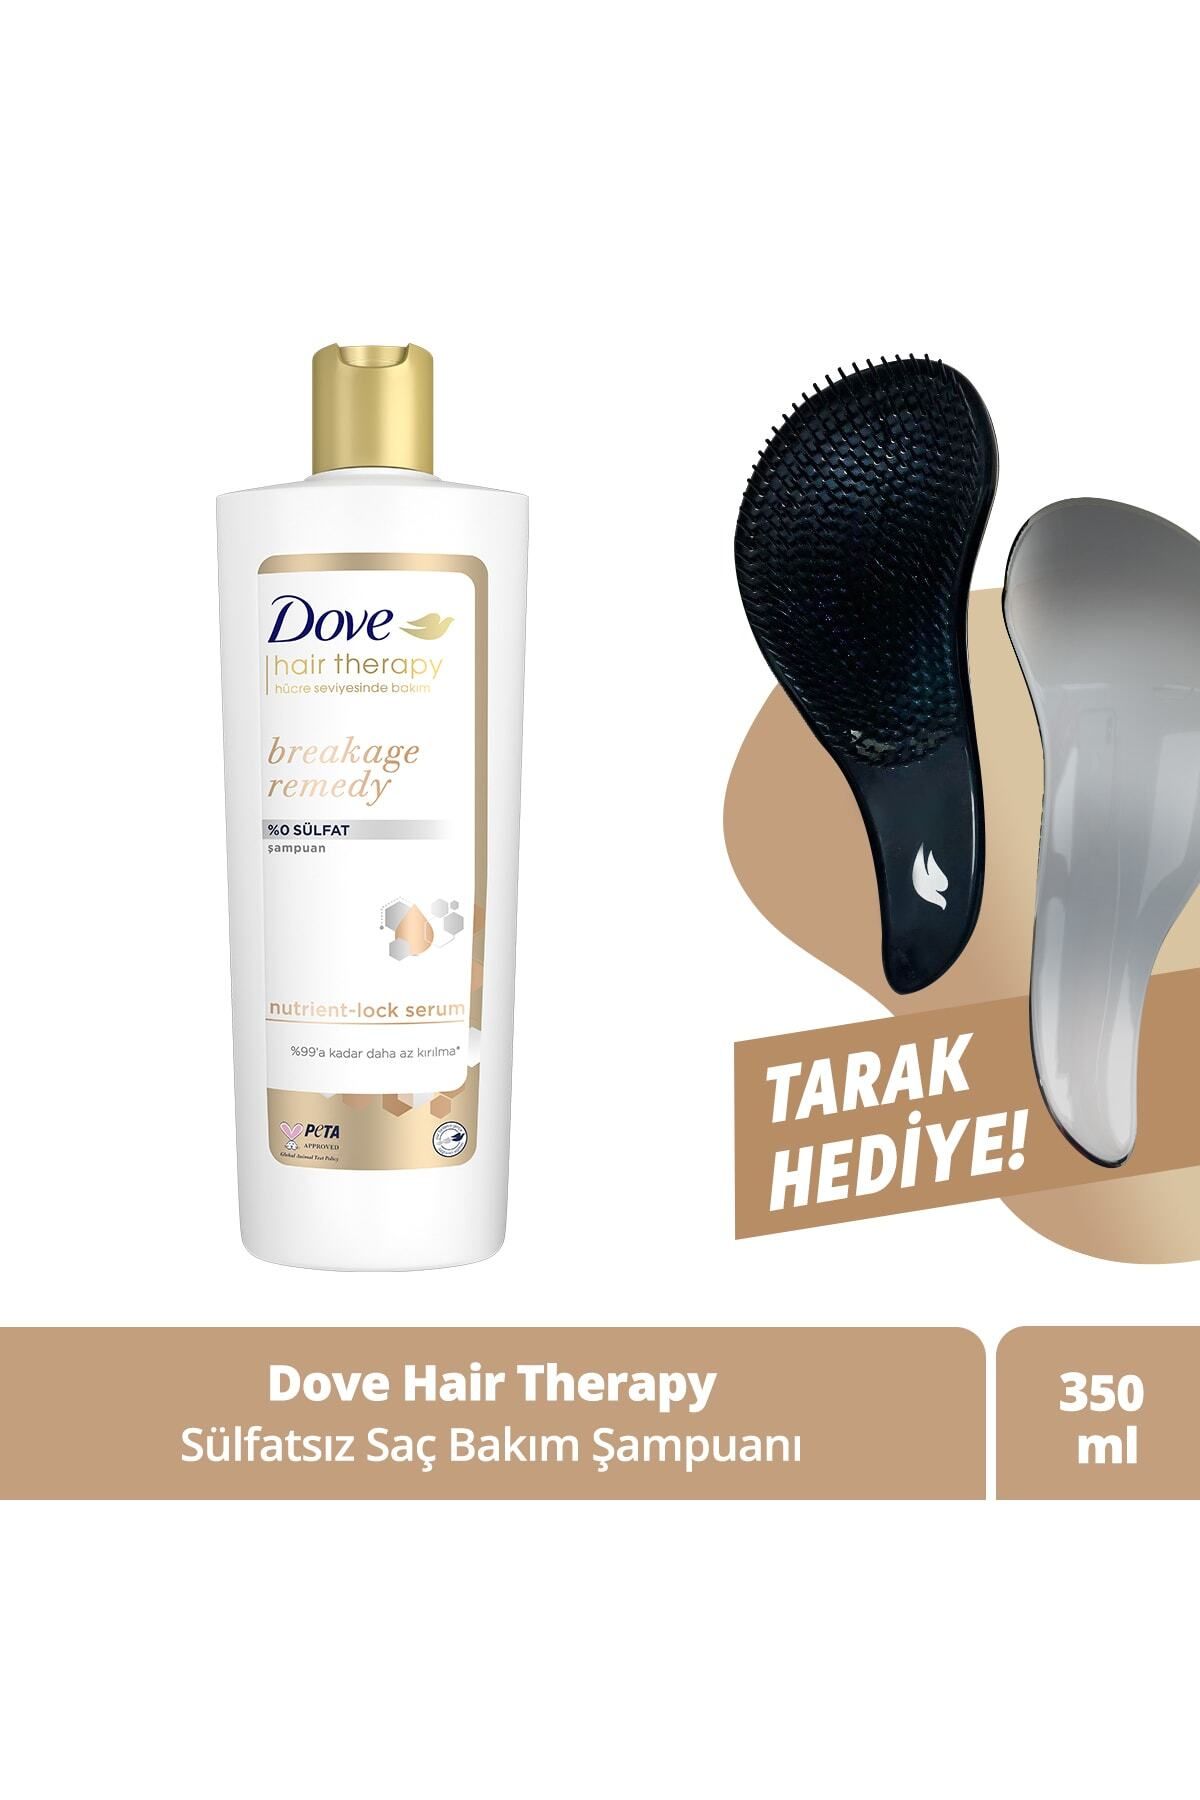 Dove Hair Therapy Sülfatsız Saç Bakım Şampuanı Breakage Remedy Kırılma Karşıtı 350 ml + Tarak Hediye